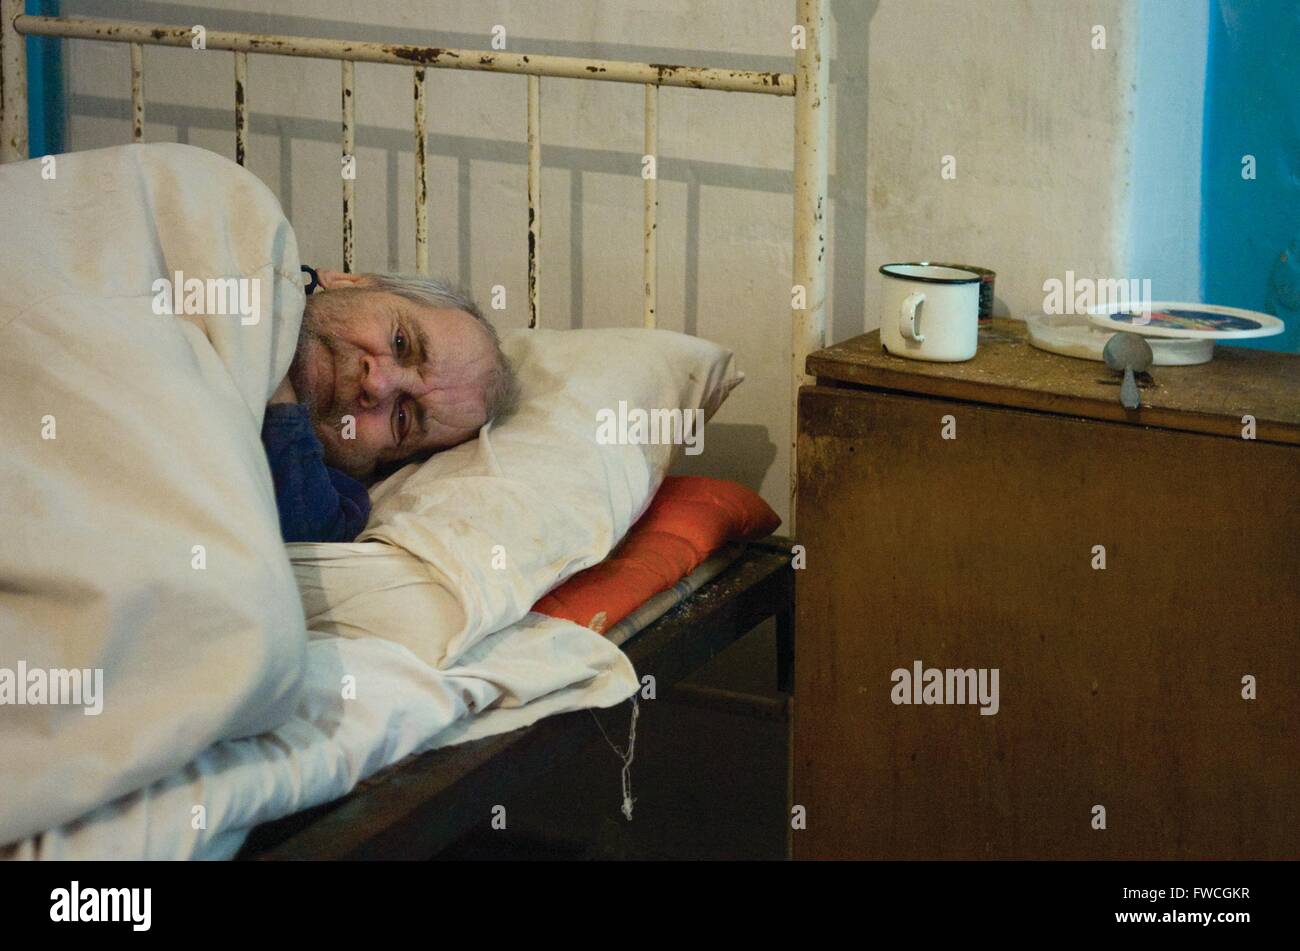 Didivschyna, Ucraina. Residente presso il governo eseguire la casa di cura prevede nel suo letto. Foto Stock